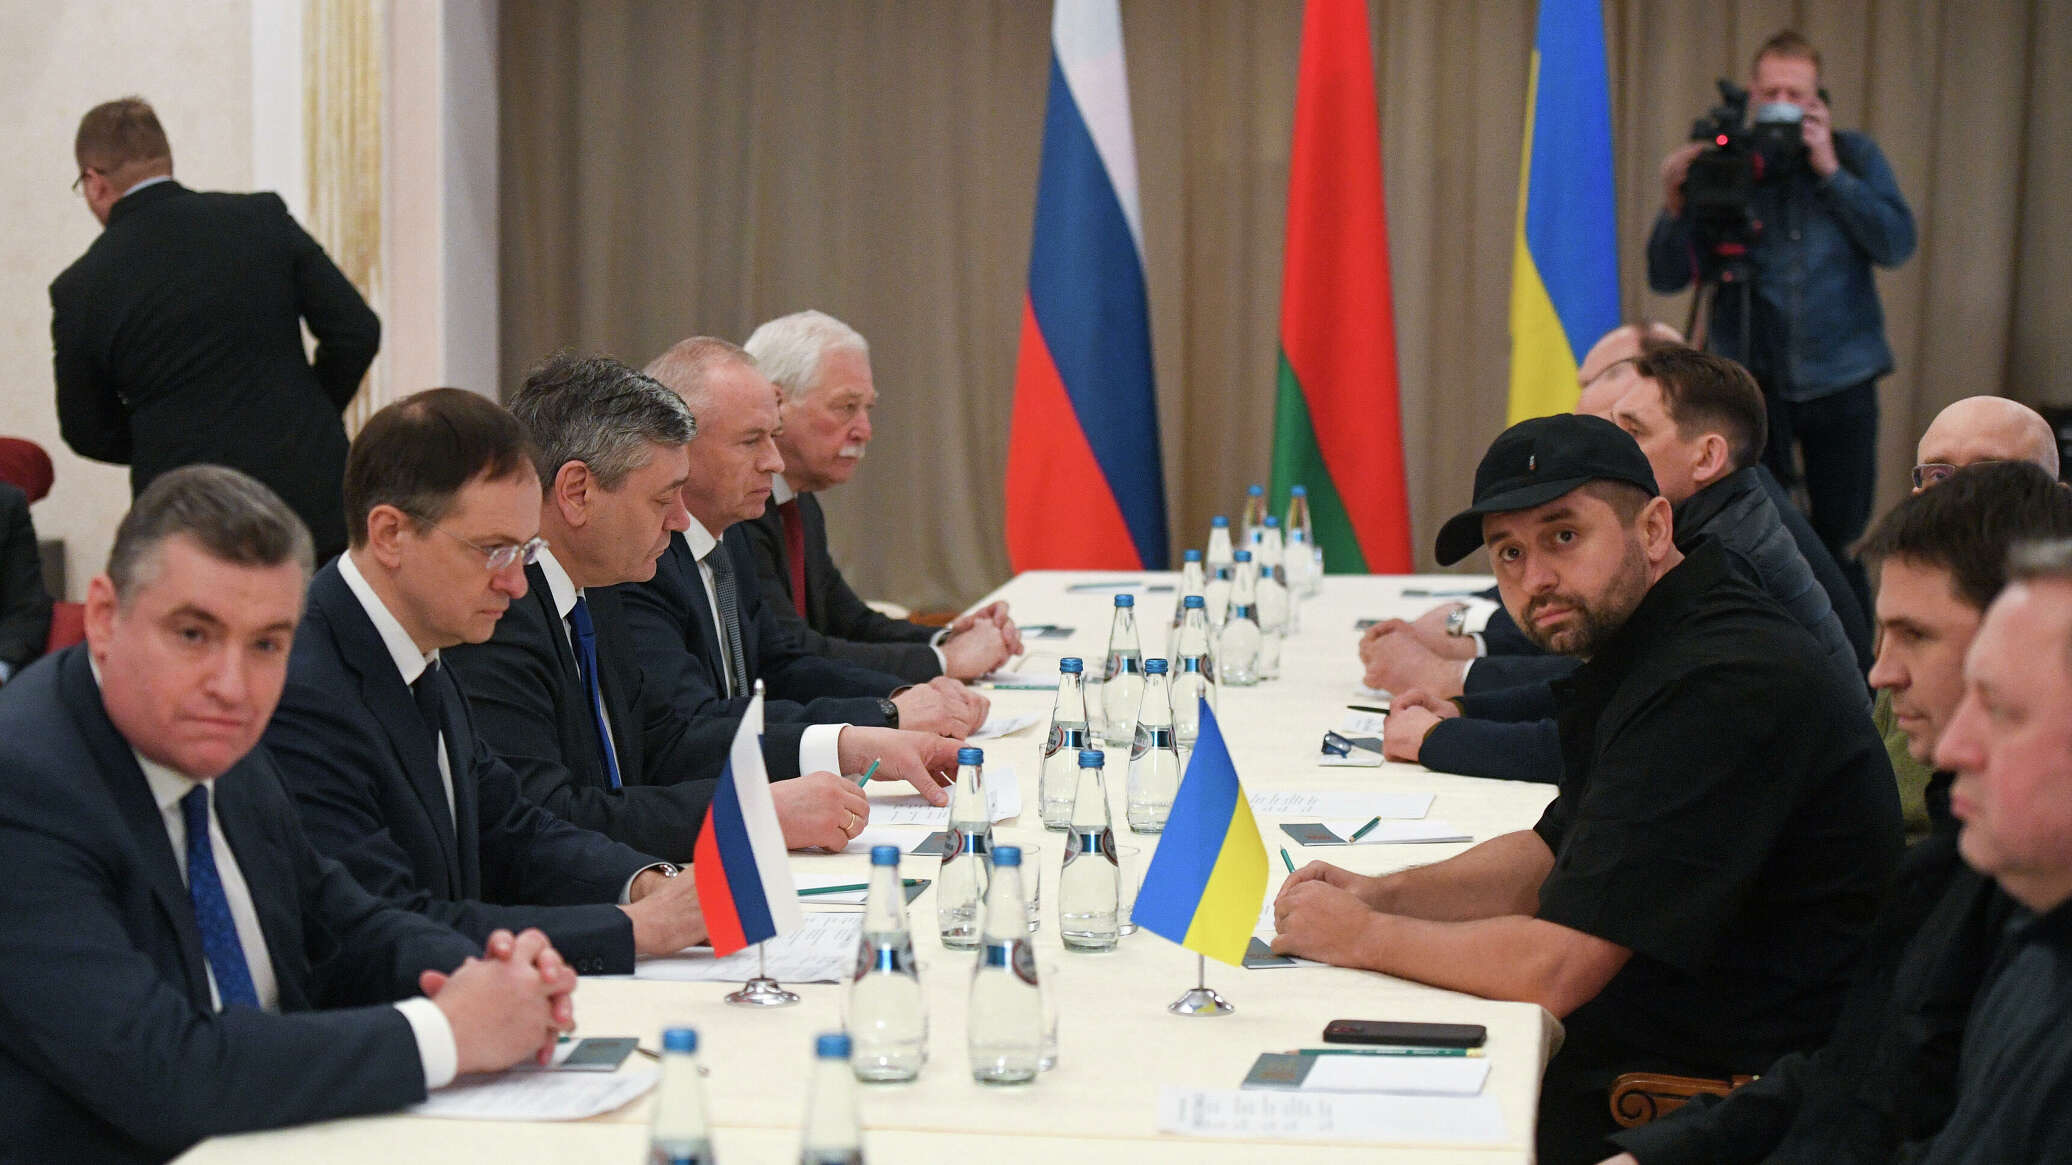 Переговоры между Россией и Украиной закончились без договорённостей 